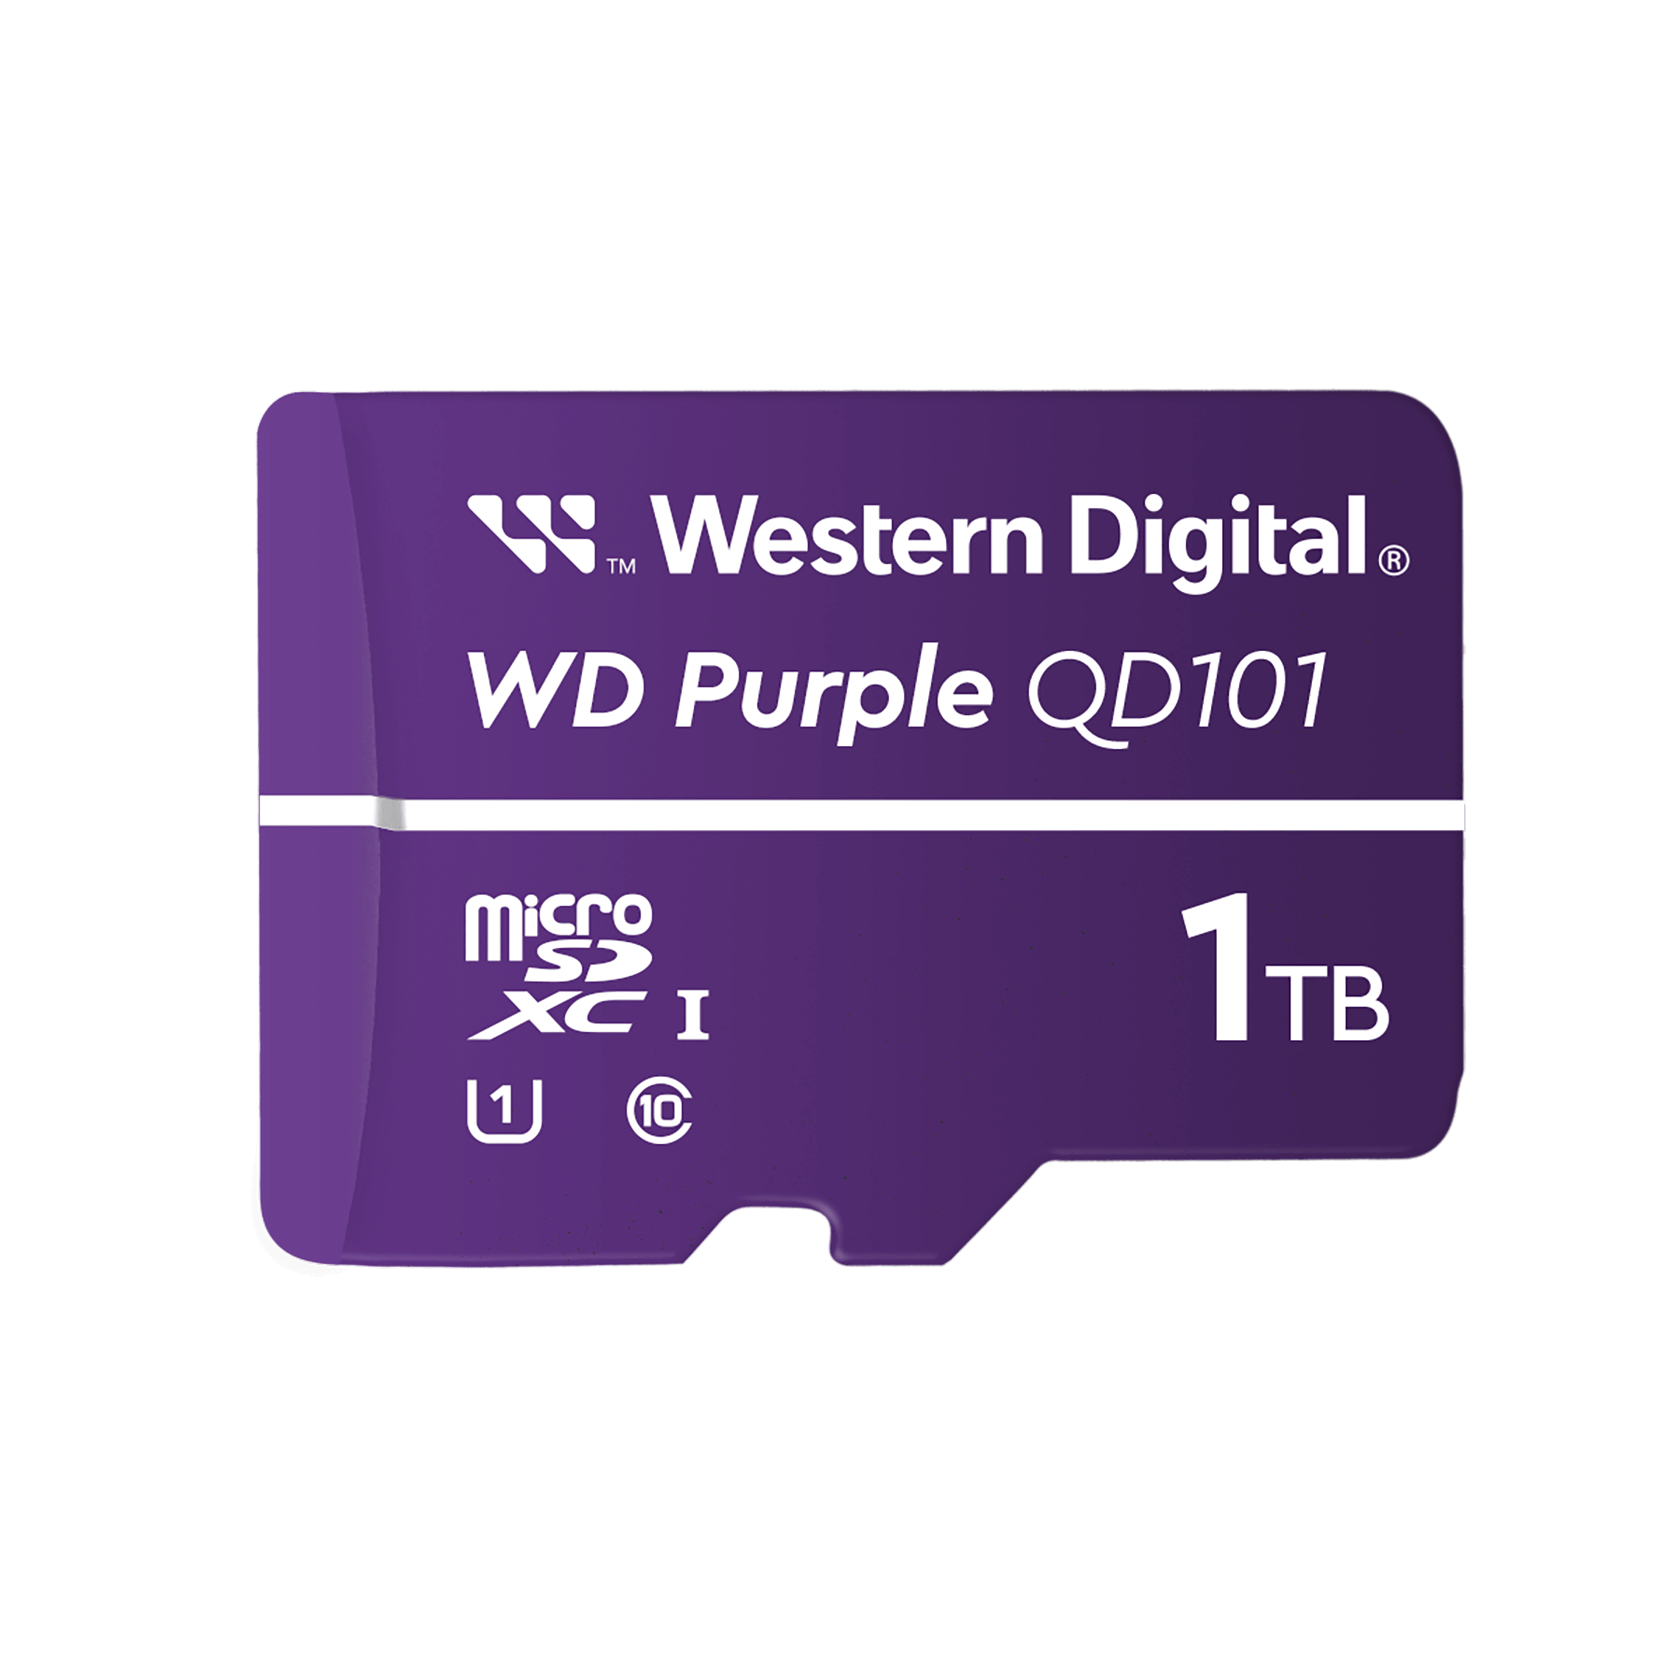 Western Digital 1TB WD SC QD101 - MicroSD Card, Purple - WDD100T1P0C